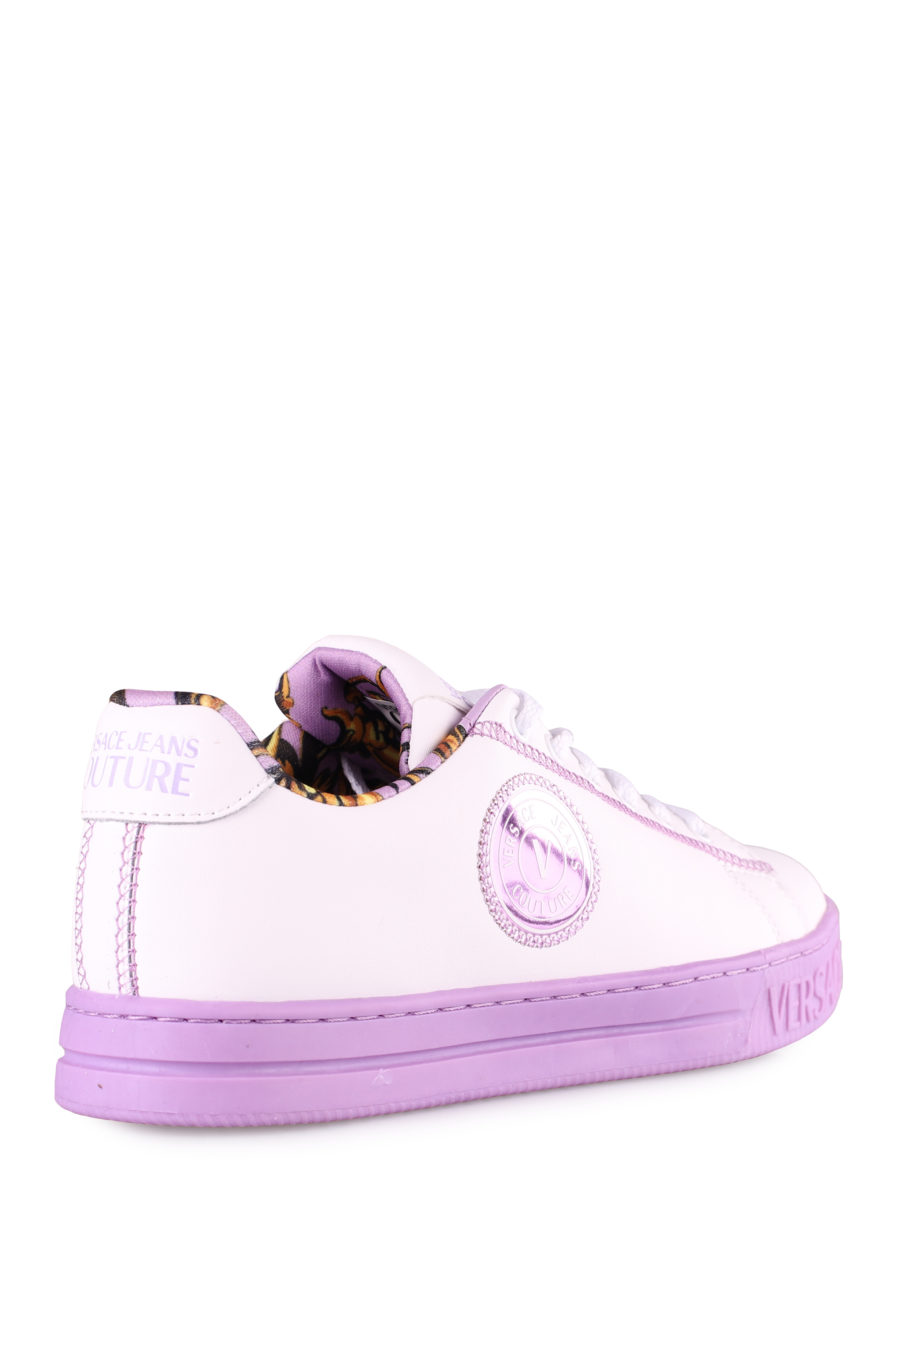 Zapatillas blancas y lila - IMG 4442